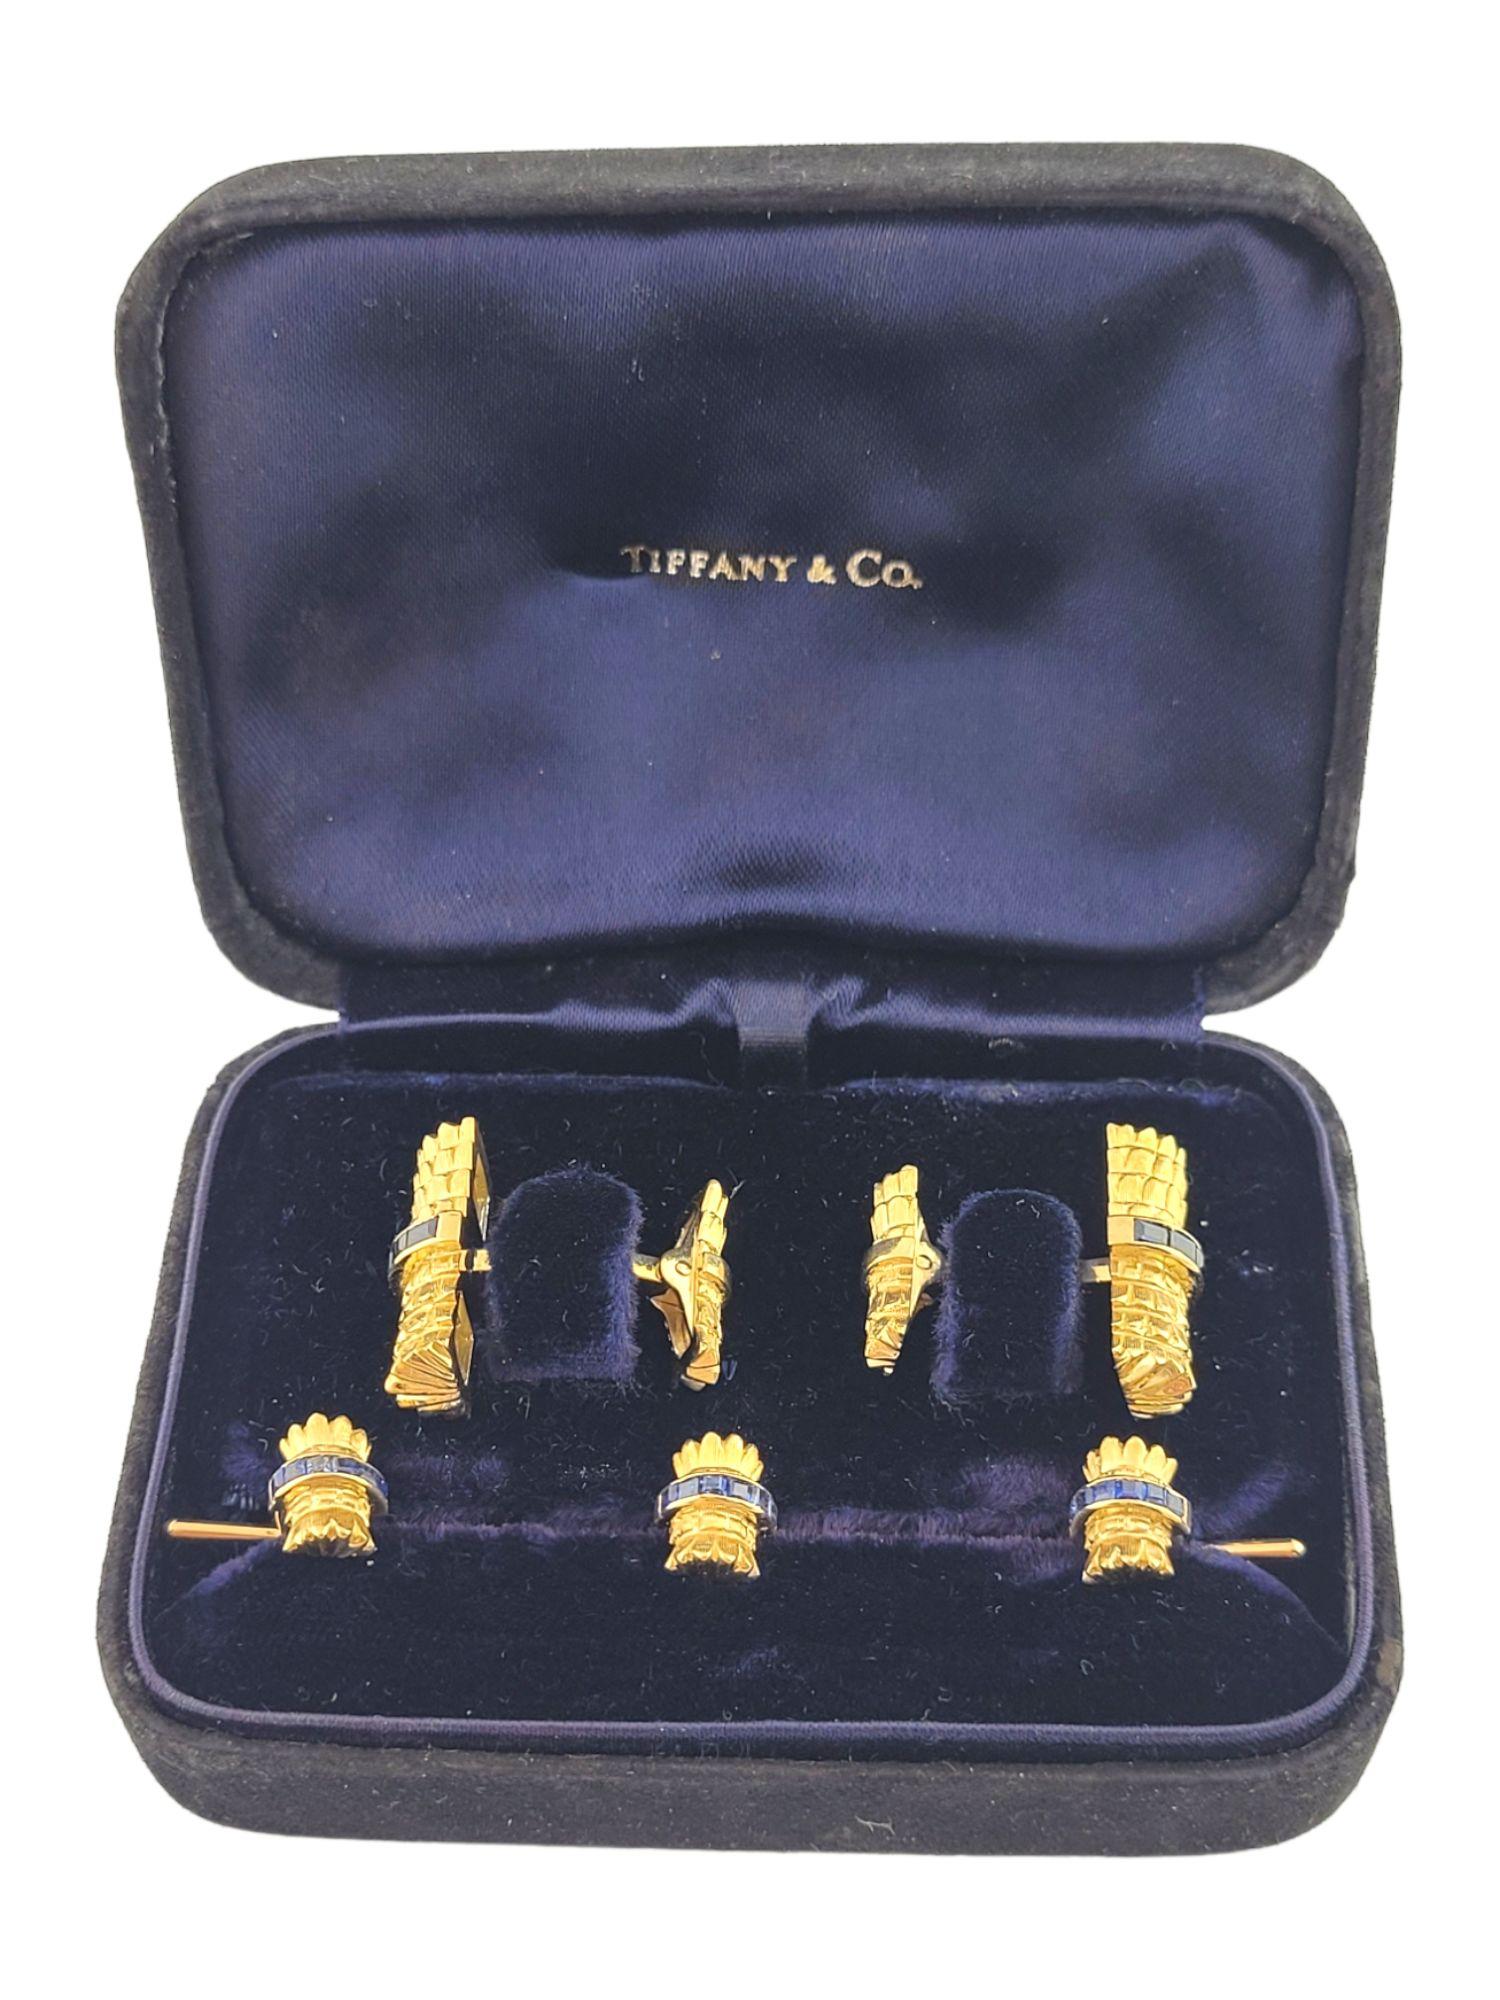 Tiffany & Co. 18K Gelbgold & Saphir Manschettenknopf und Ohrstecker Set #14812 (Carréeschliff)